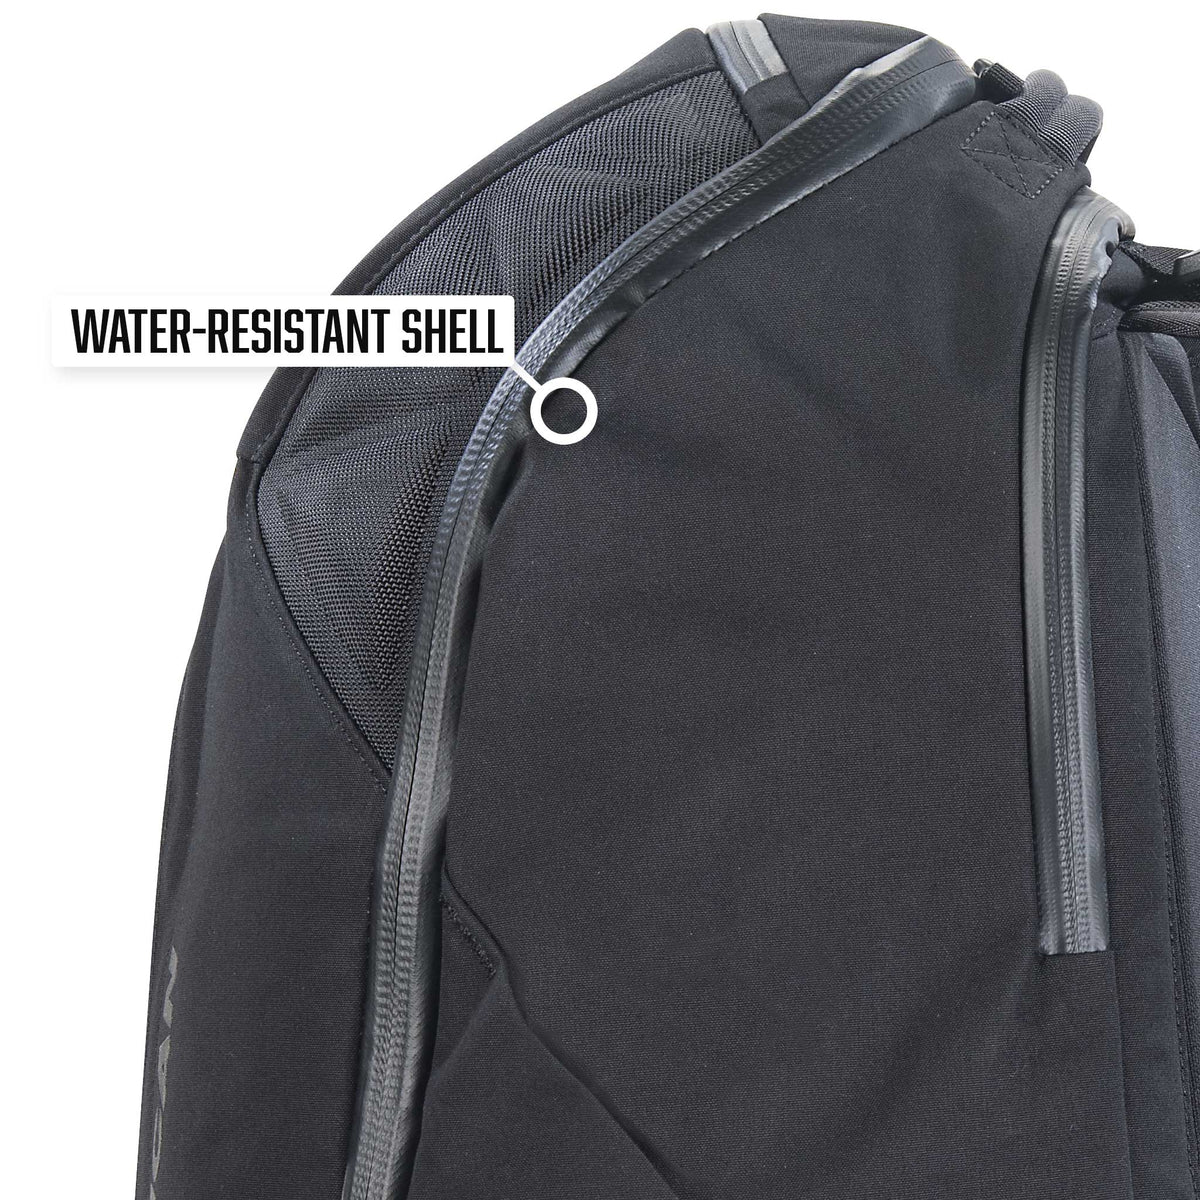 Pelican™ MPB35 Backpack is water-resistant